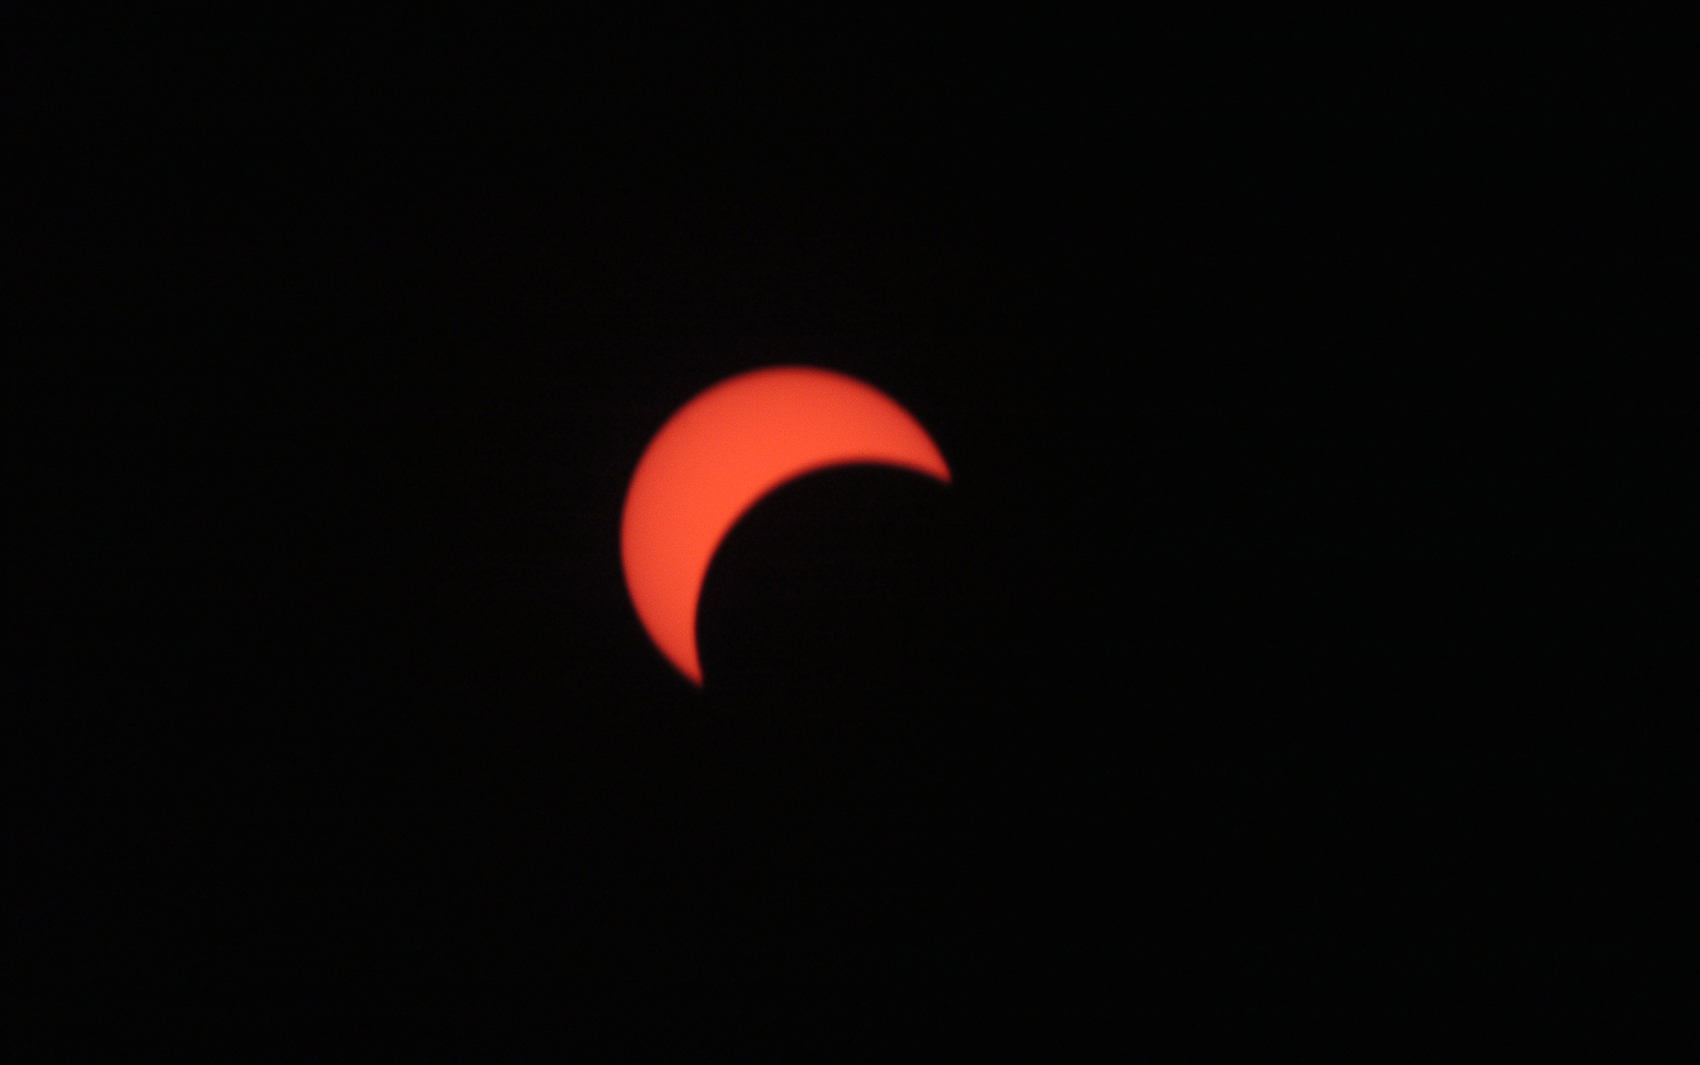 Eclipse solar foi visto neste domingo em Nairóbi, no Quênia.